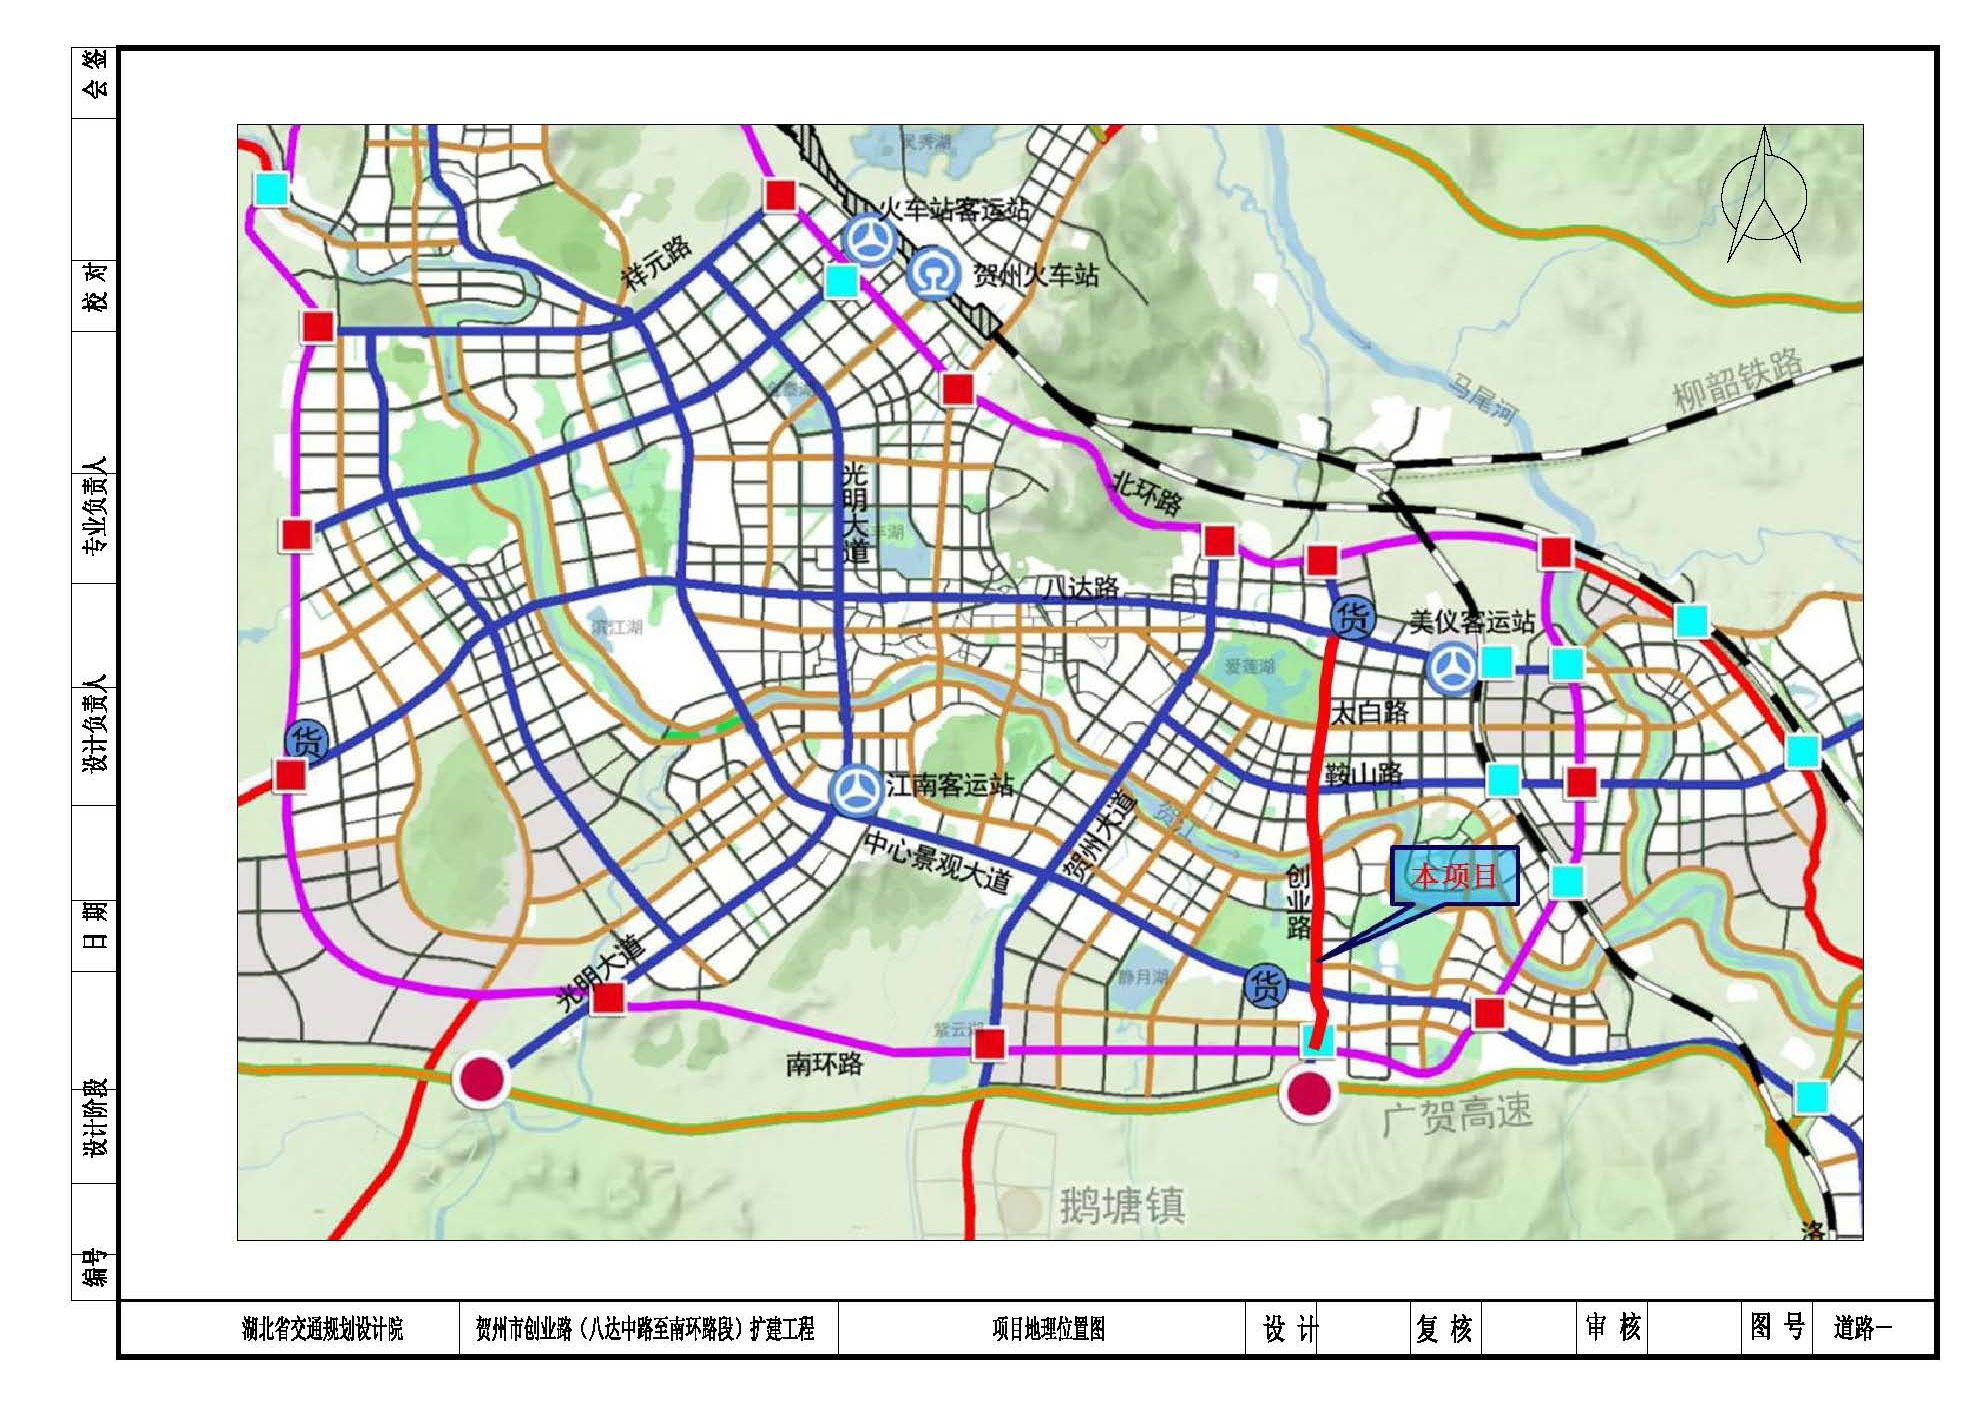 贺州市创业路(八达中路至南环路段)扩建工程方案设计公示